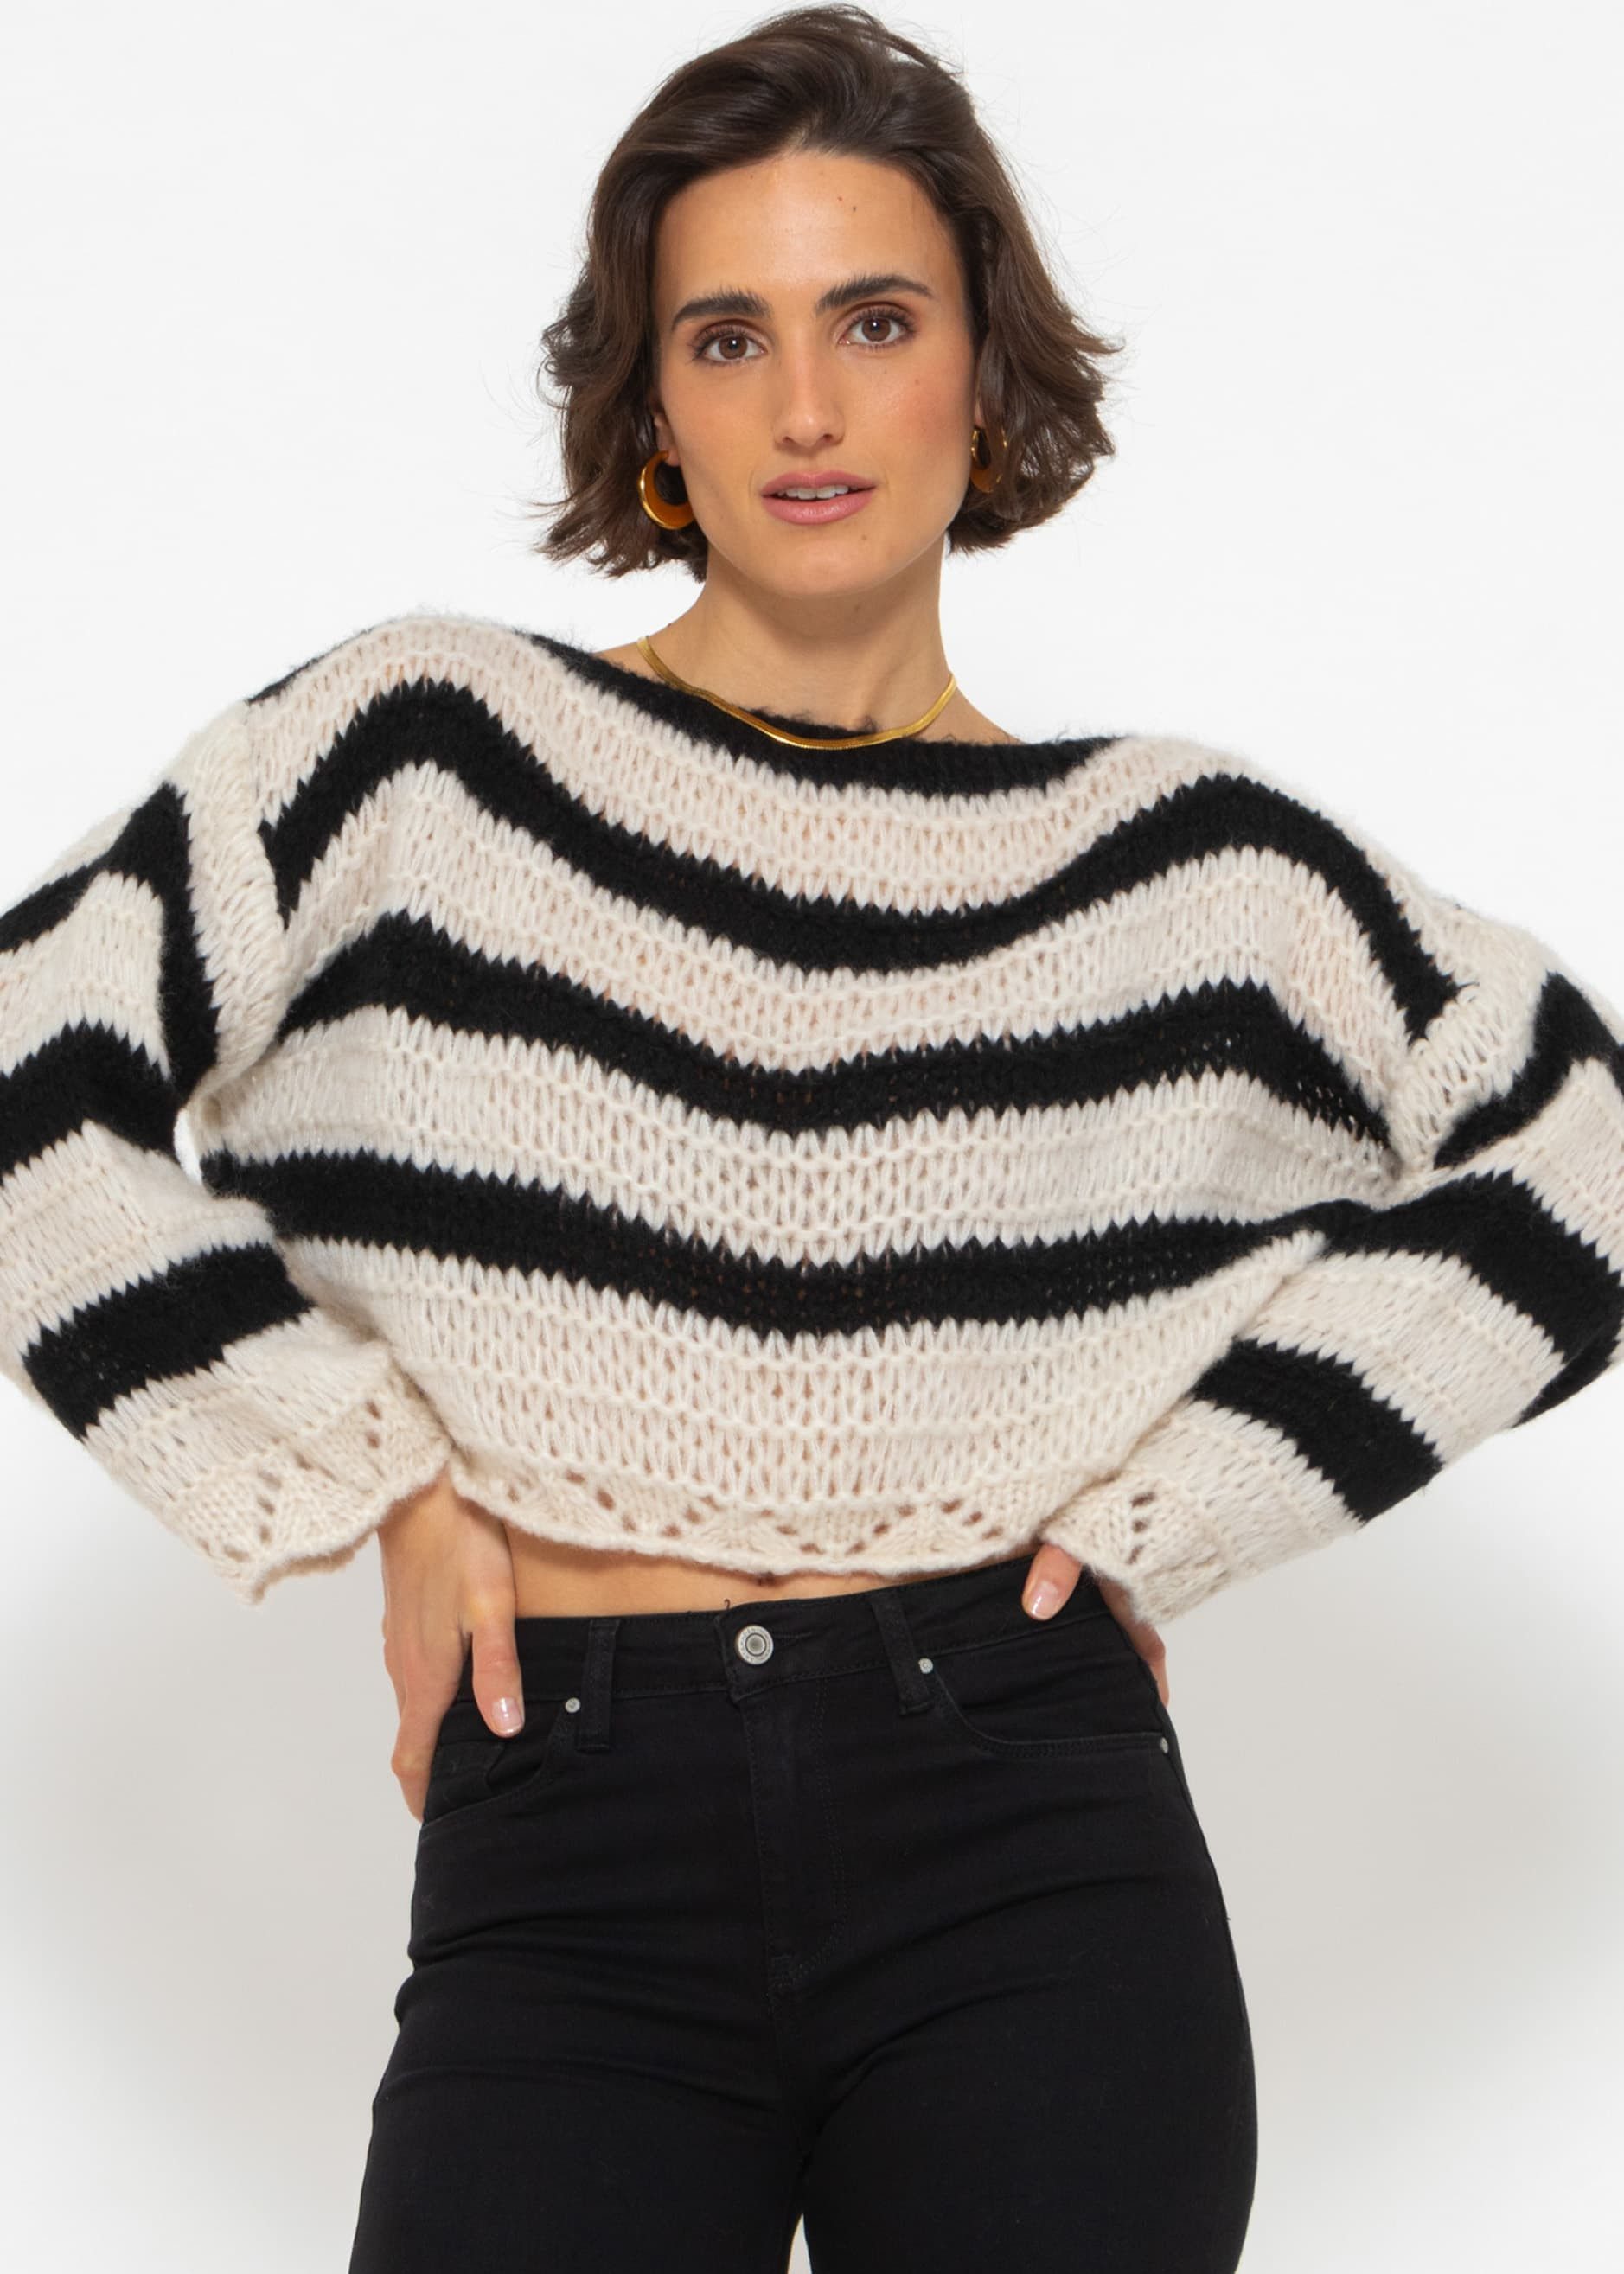 SASSYCLASSY Streifenpullover Oversize Pullover mit Streifen Grobstrickpullover mit weiten Ärmeln und Ajour-Abschlüssen